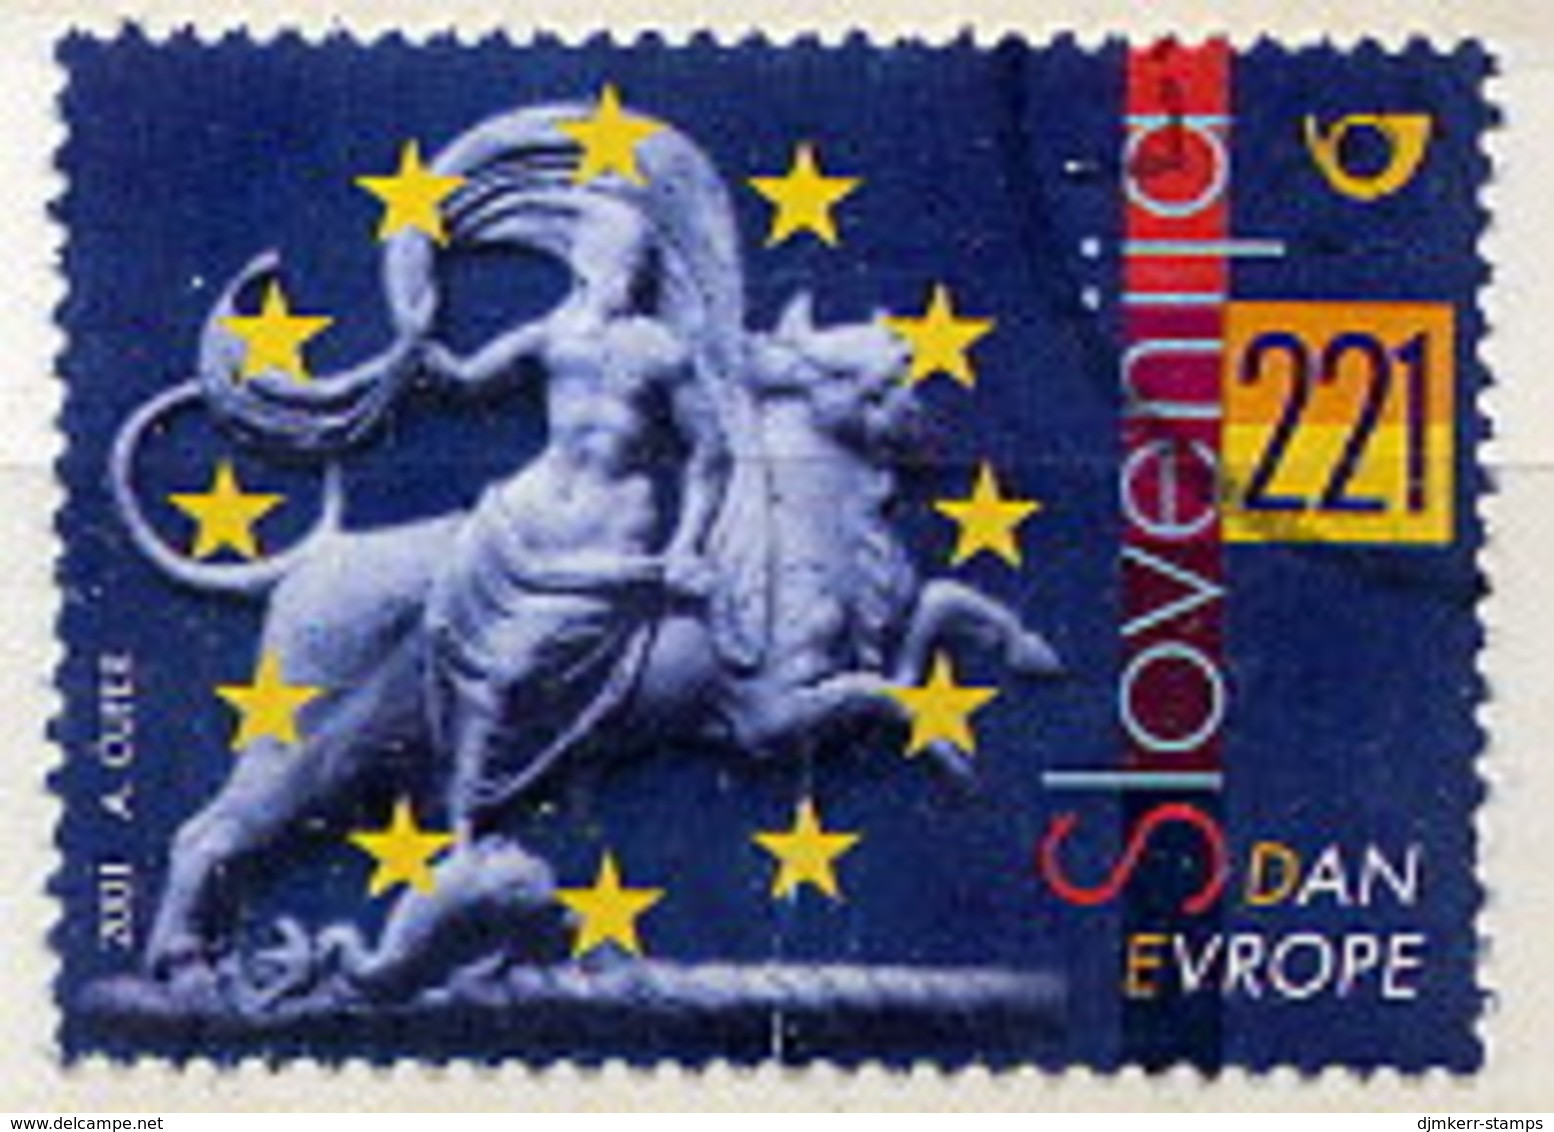 SLOVENIA 2001 Europe Day Used. Michel 348 - Slovénie